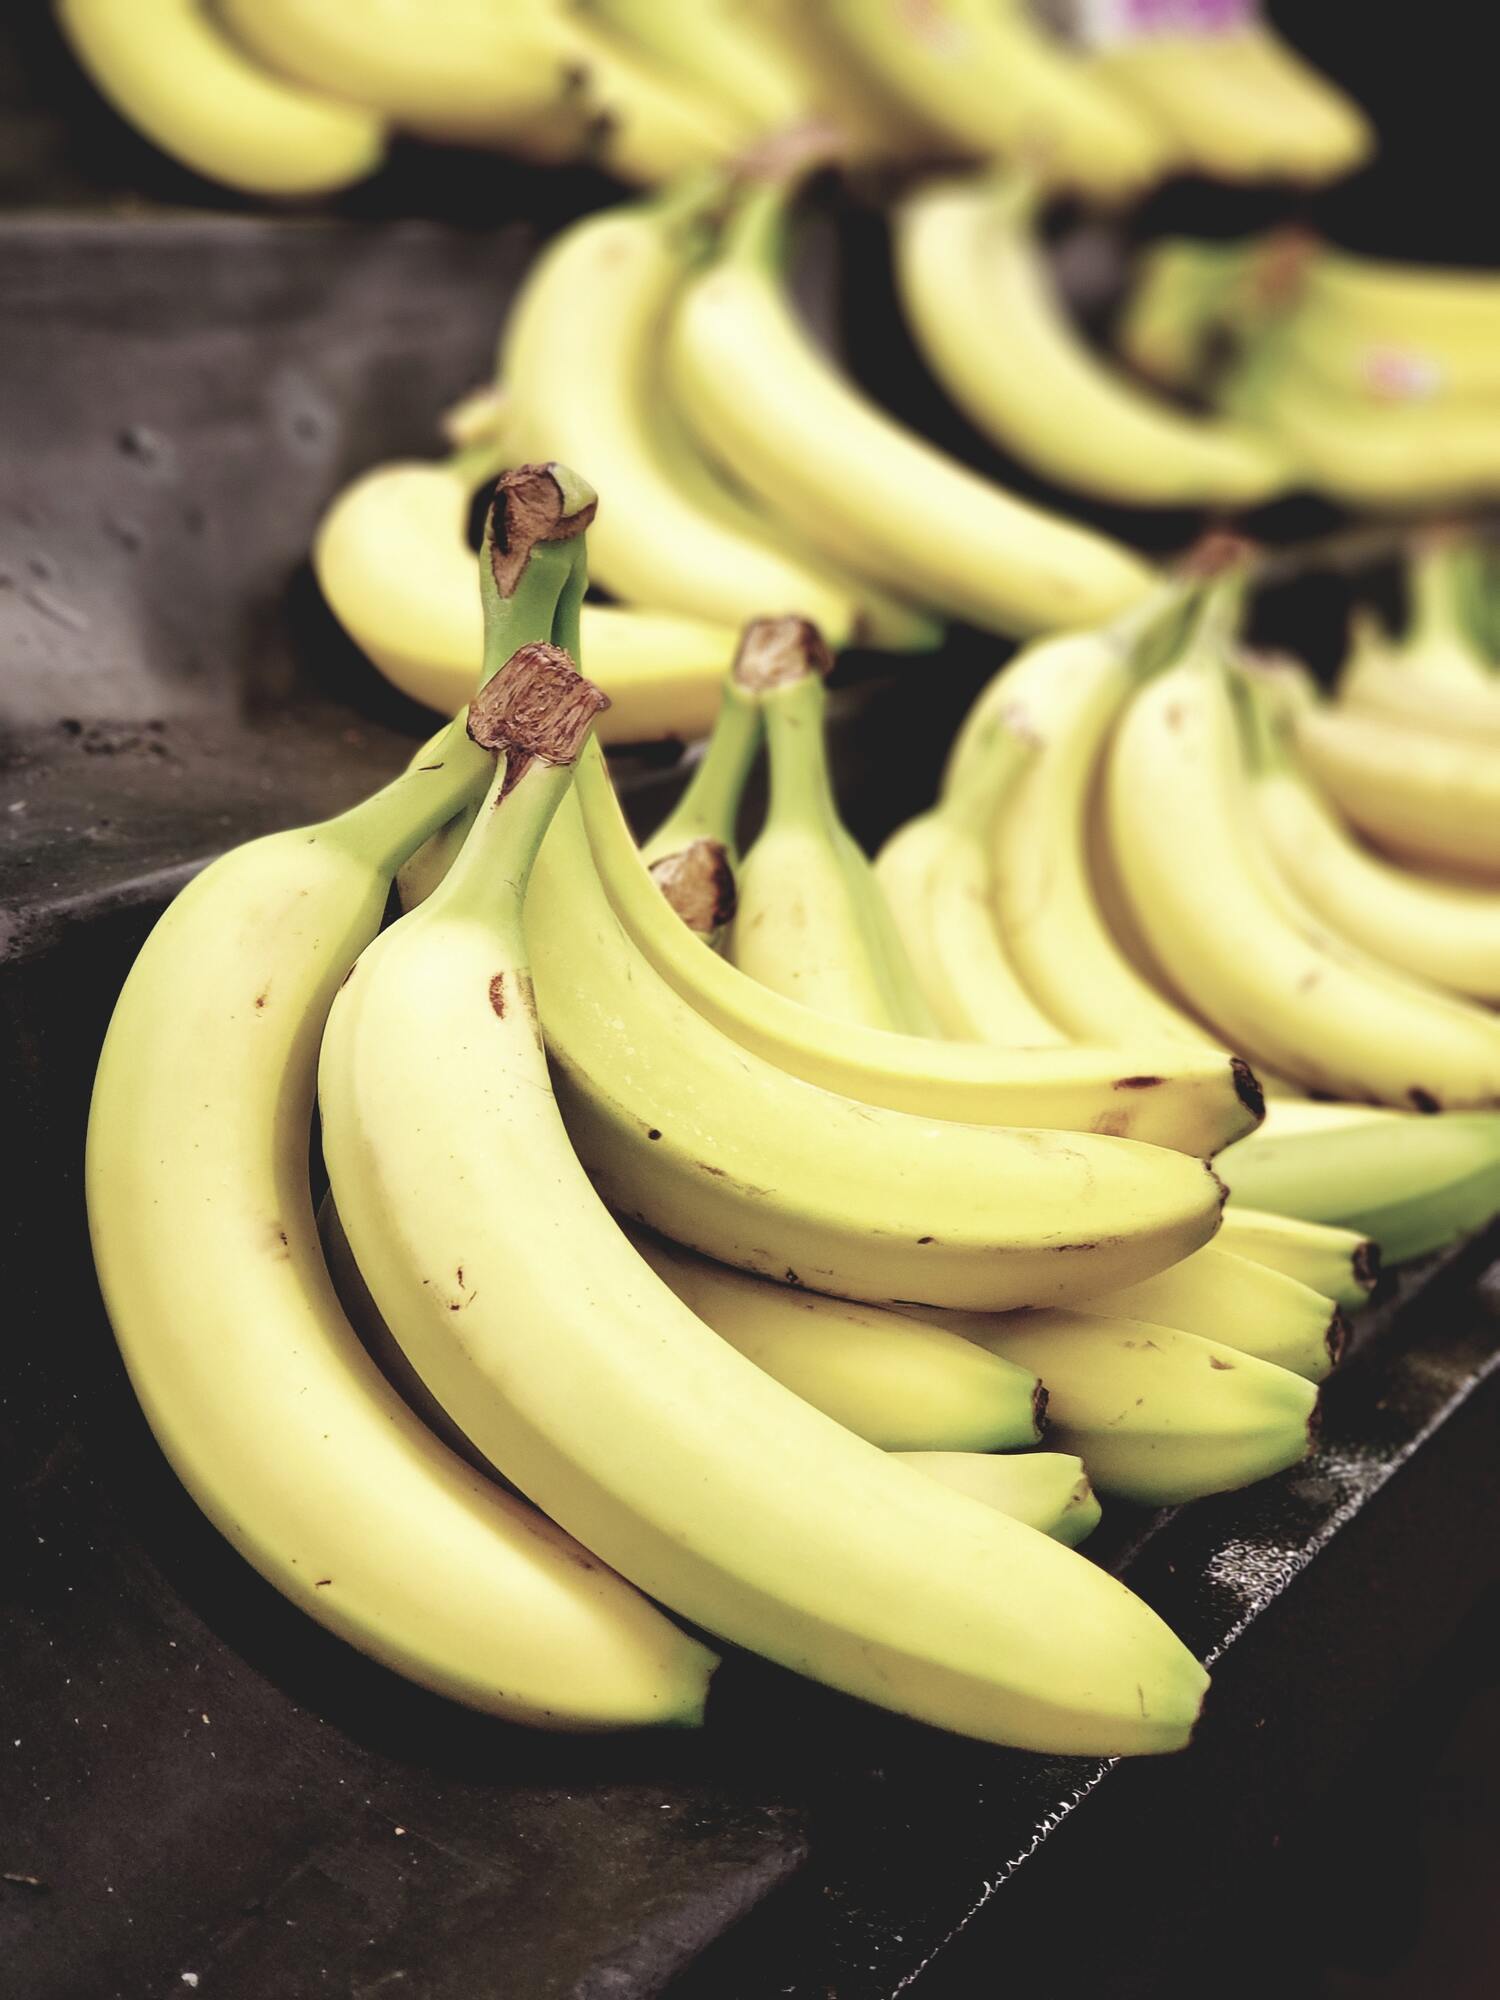 Як правильно зберігати банани